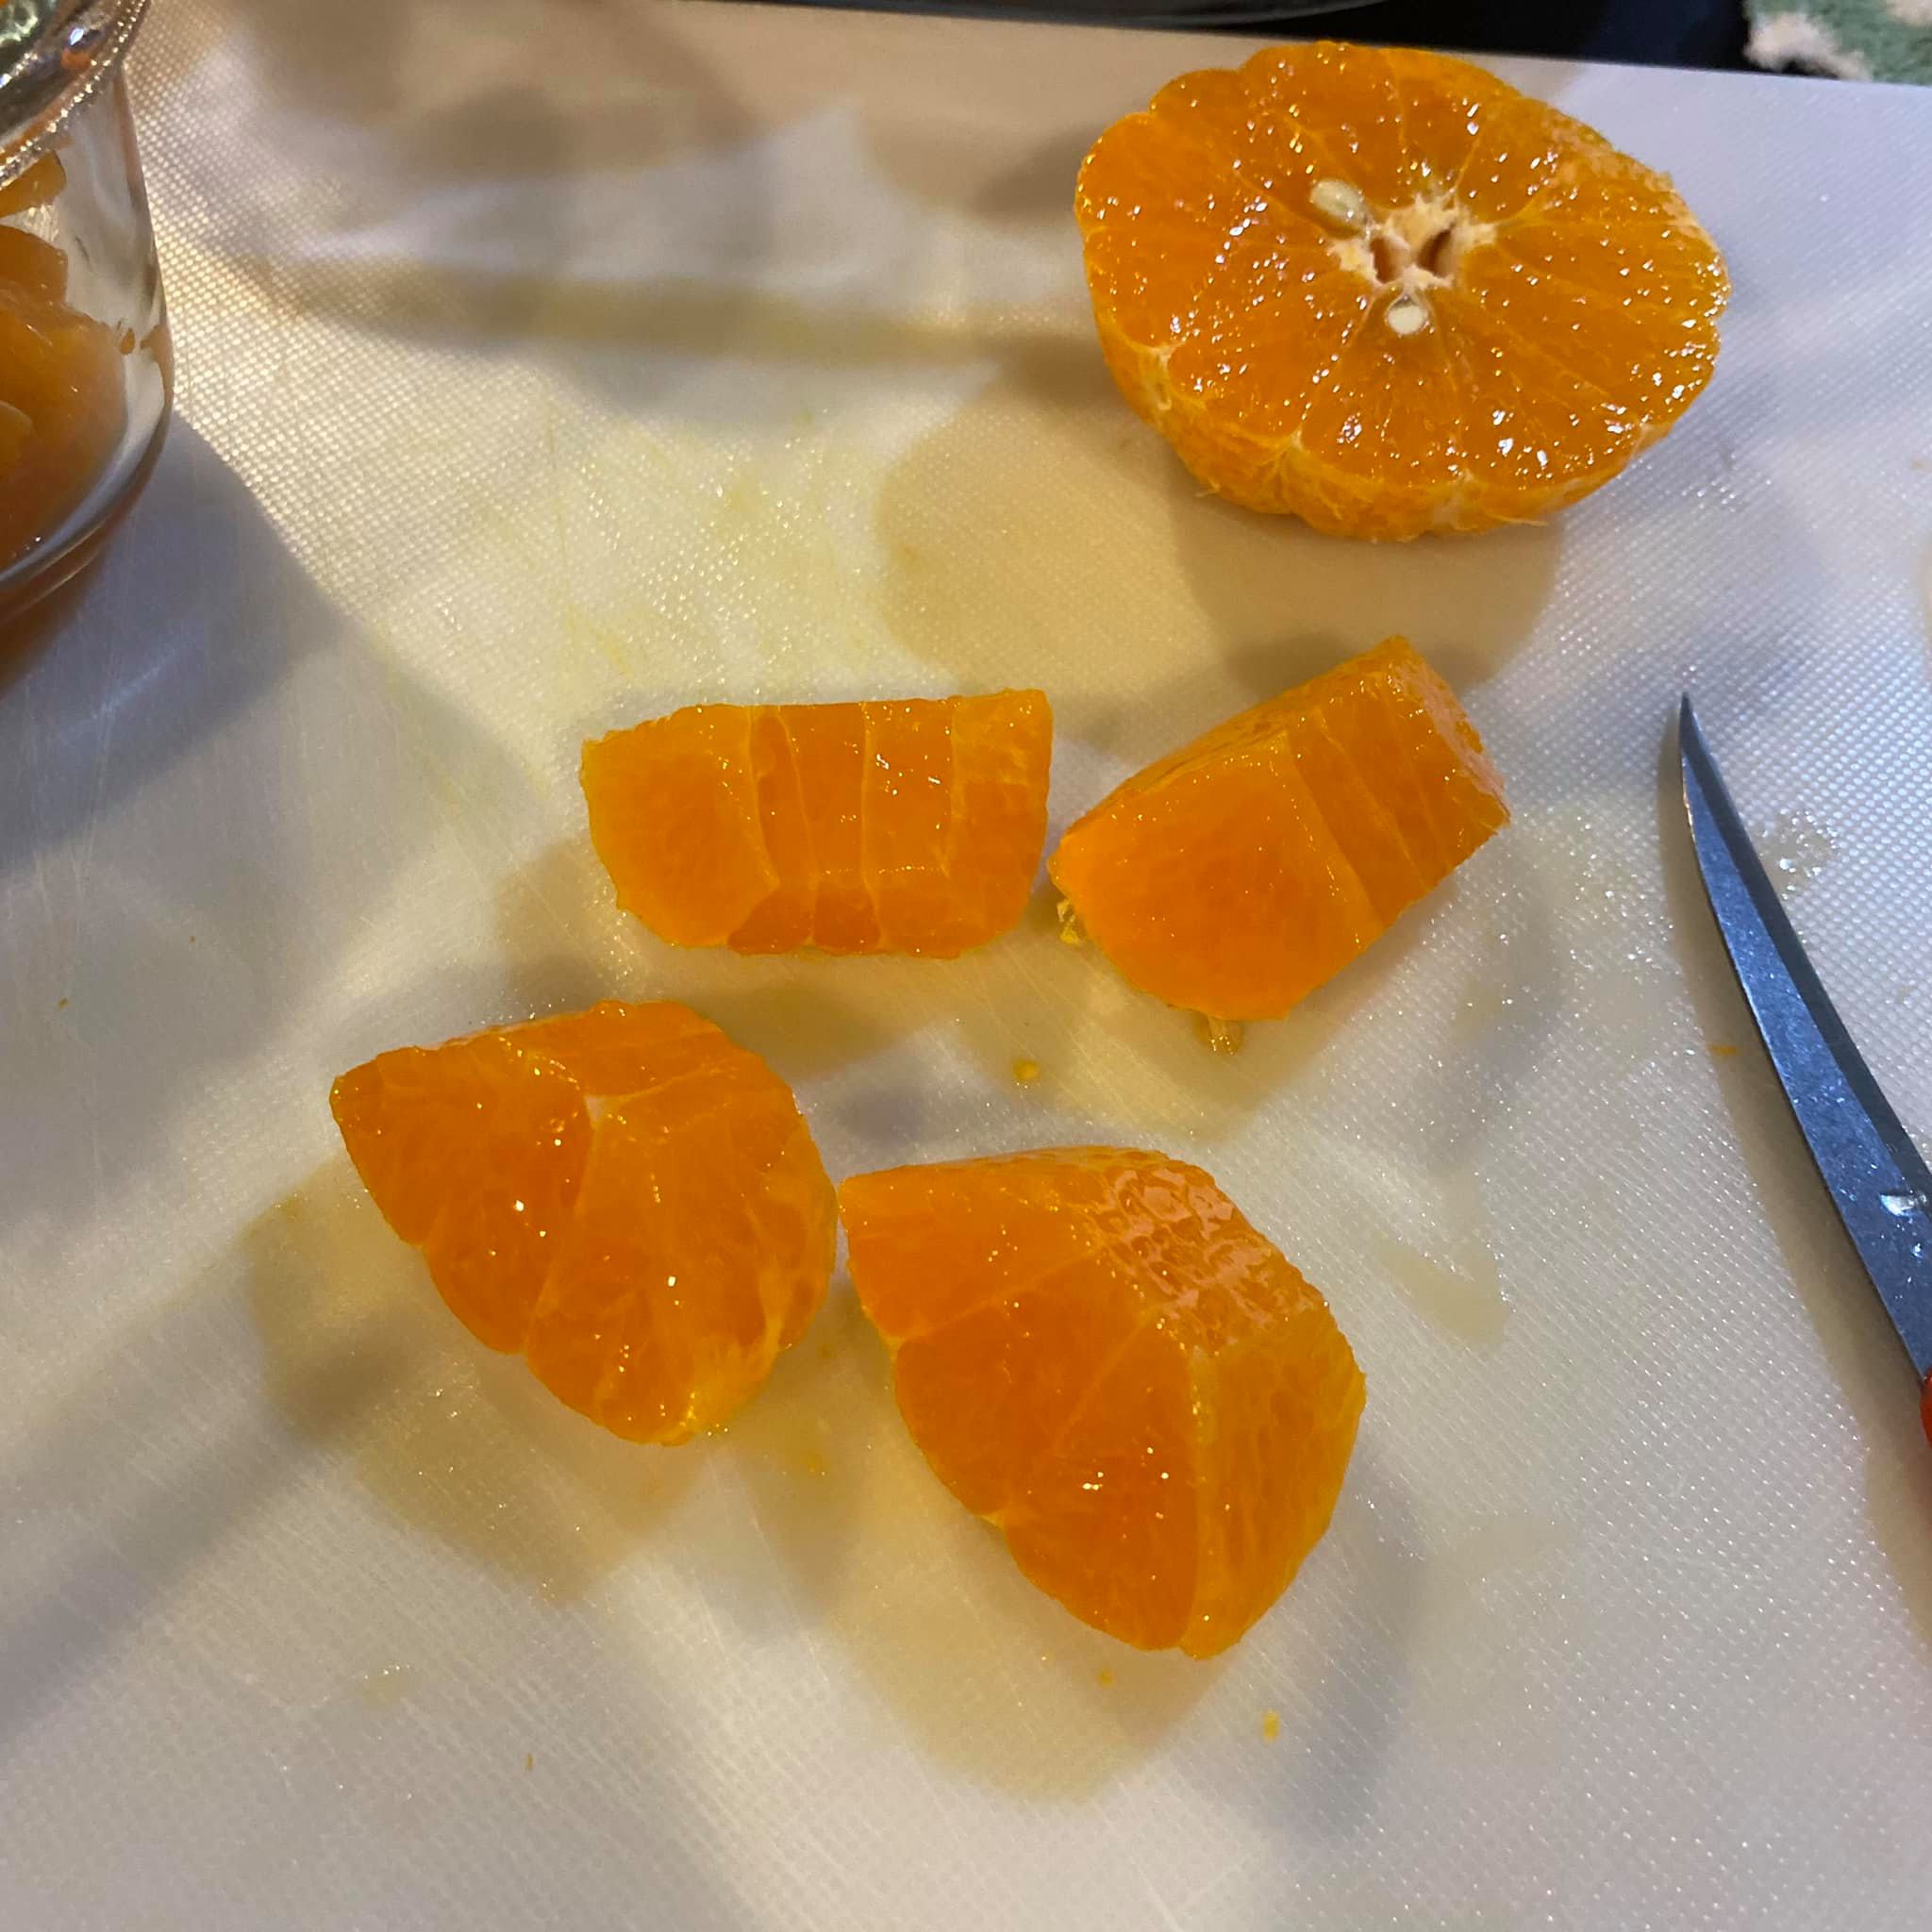 ปอกส้มยังไงให้น่าทาน7